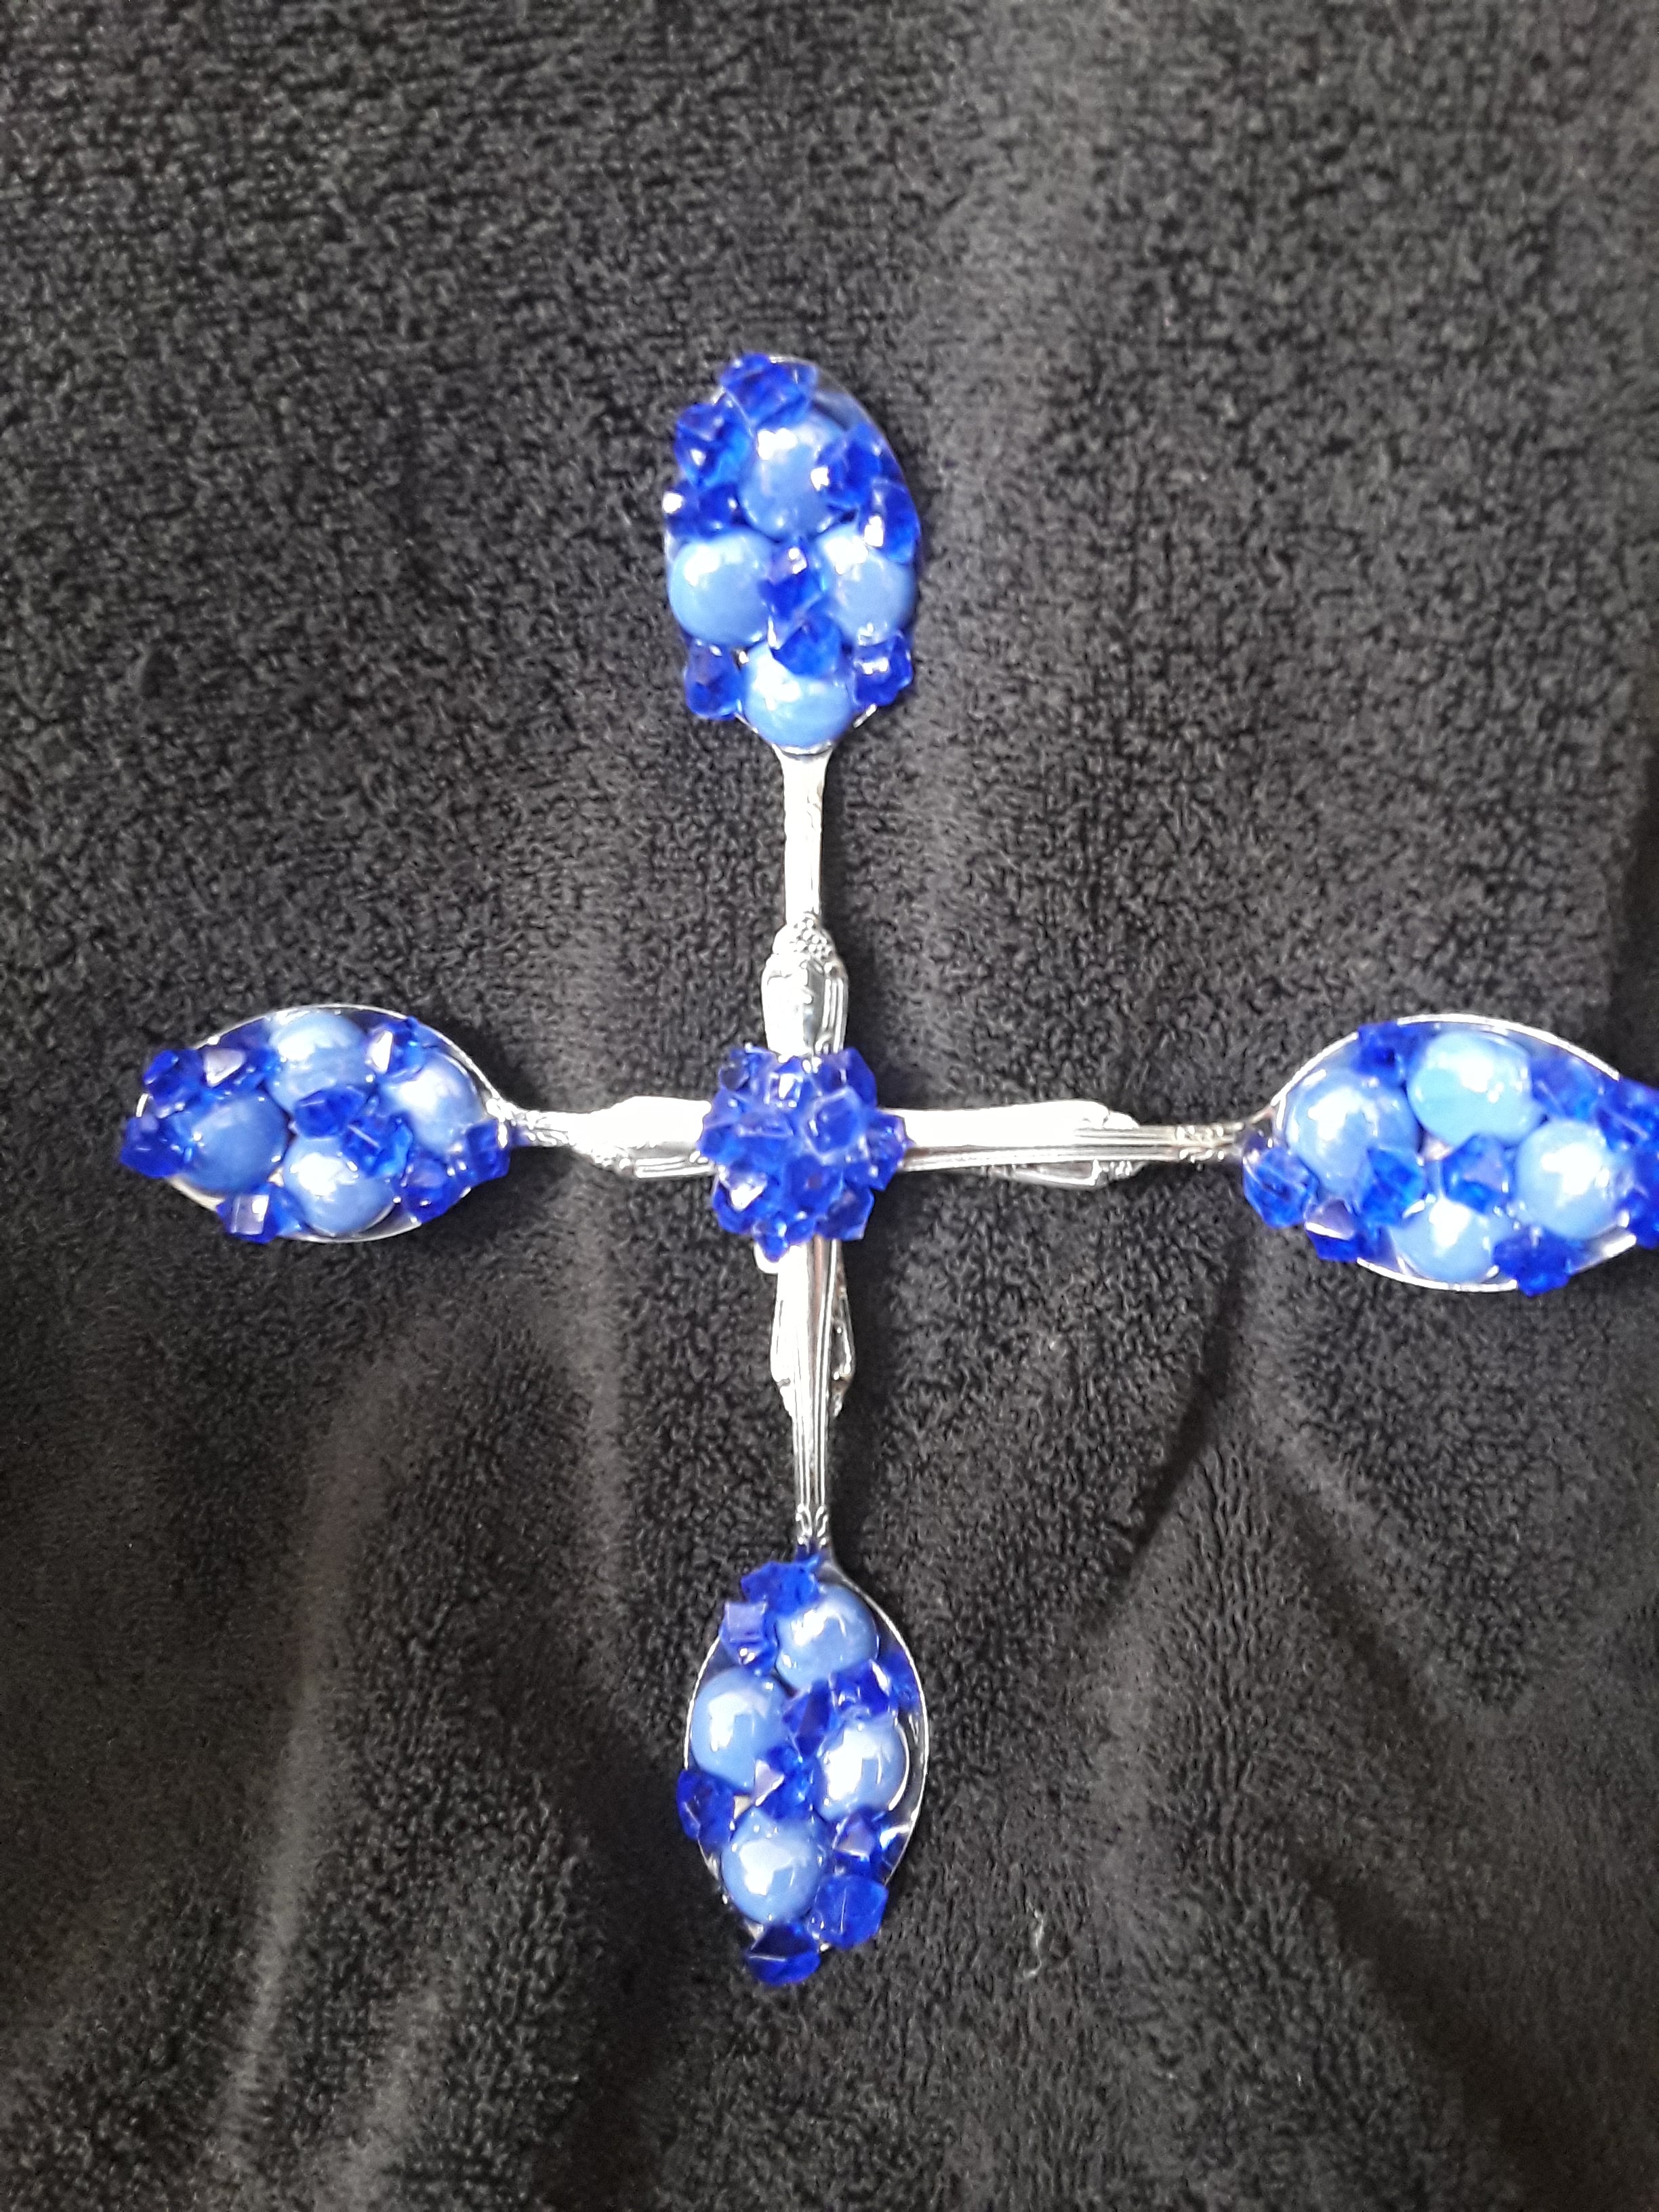 Beautiful Spoon Cross Embellished in Blue